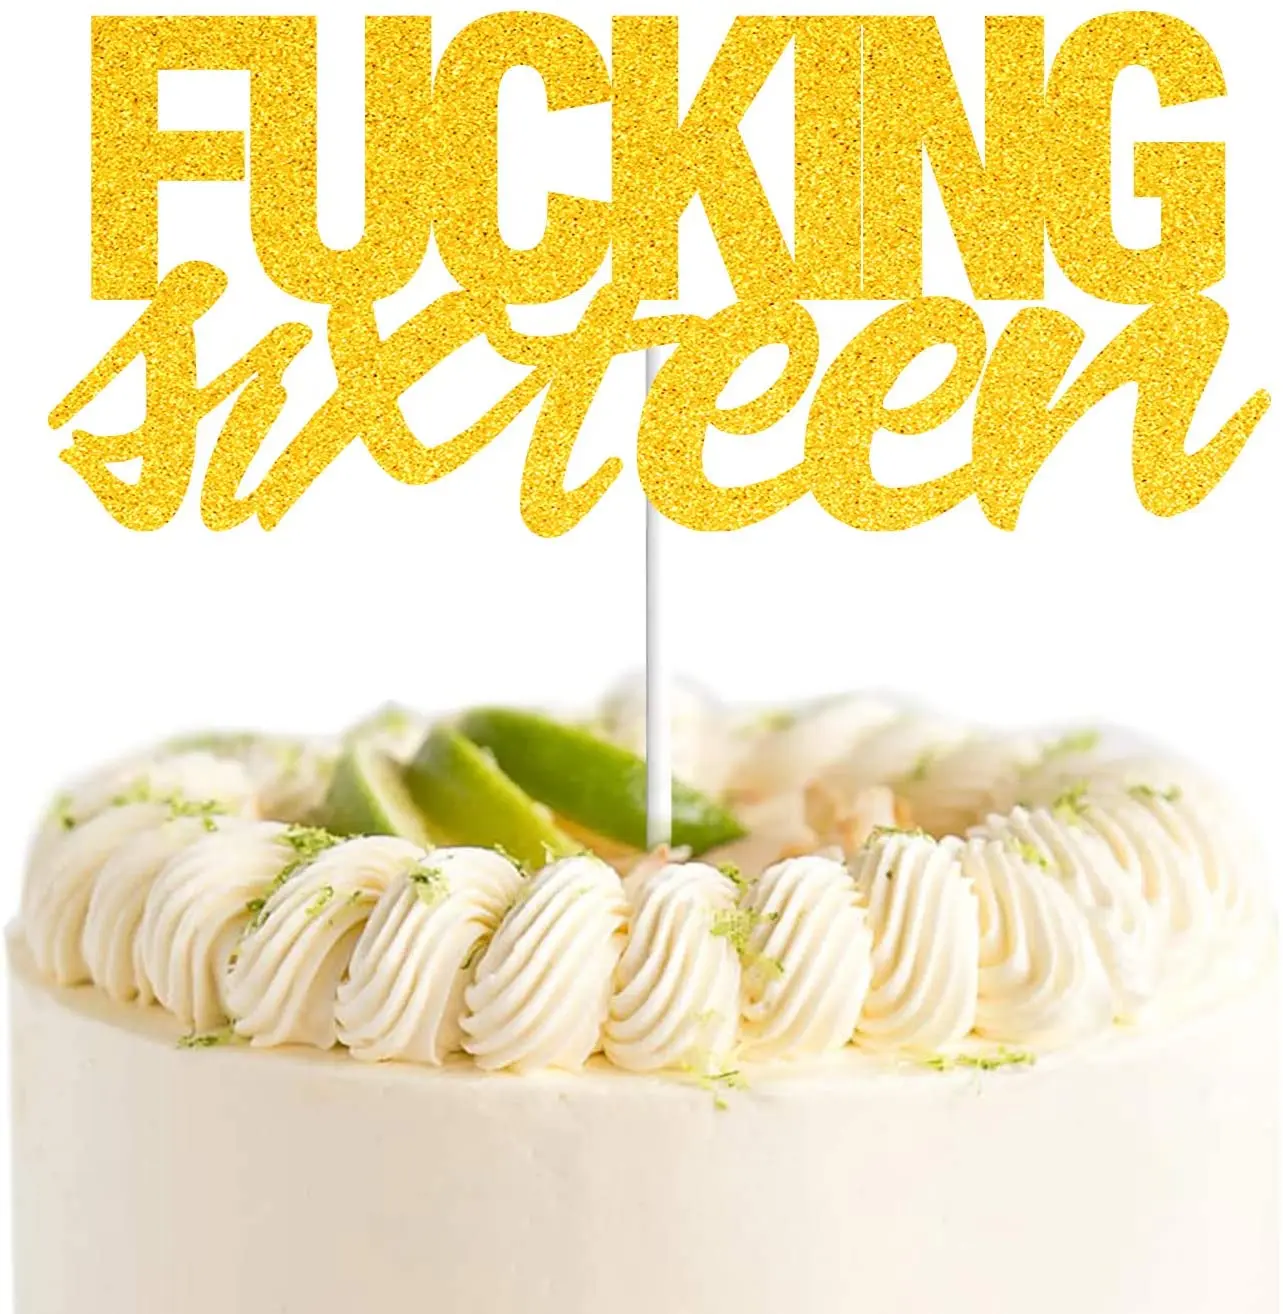 

Гребаные шестнадцать золотые блестящие счастливые топперы для торта на день рождения 16 лет 16th день рождения юбилейные праздничные украшен...